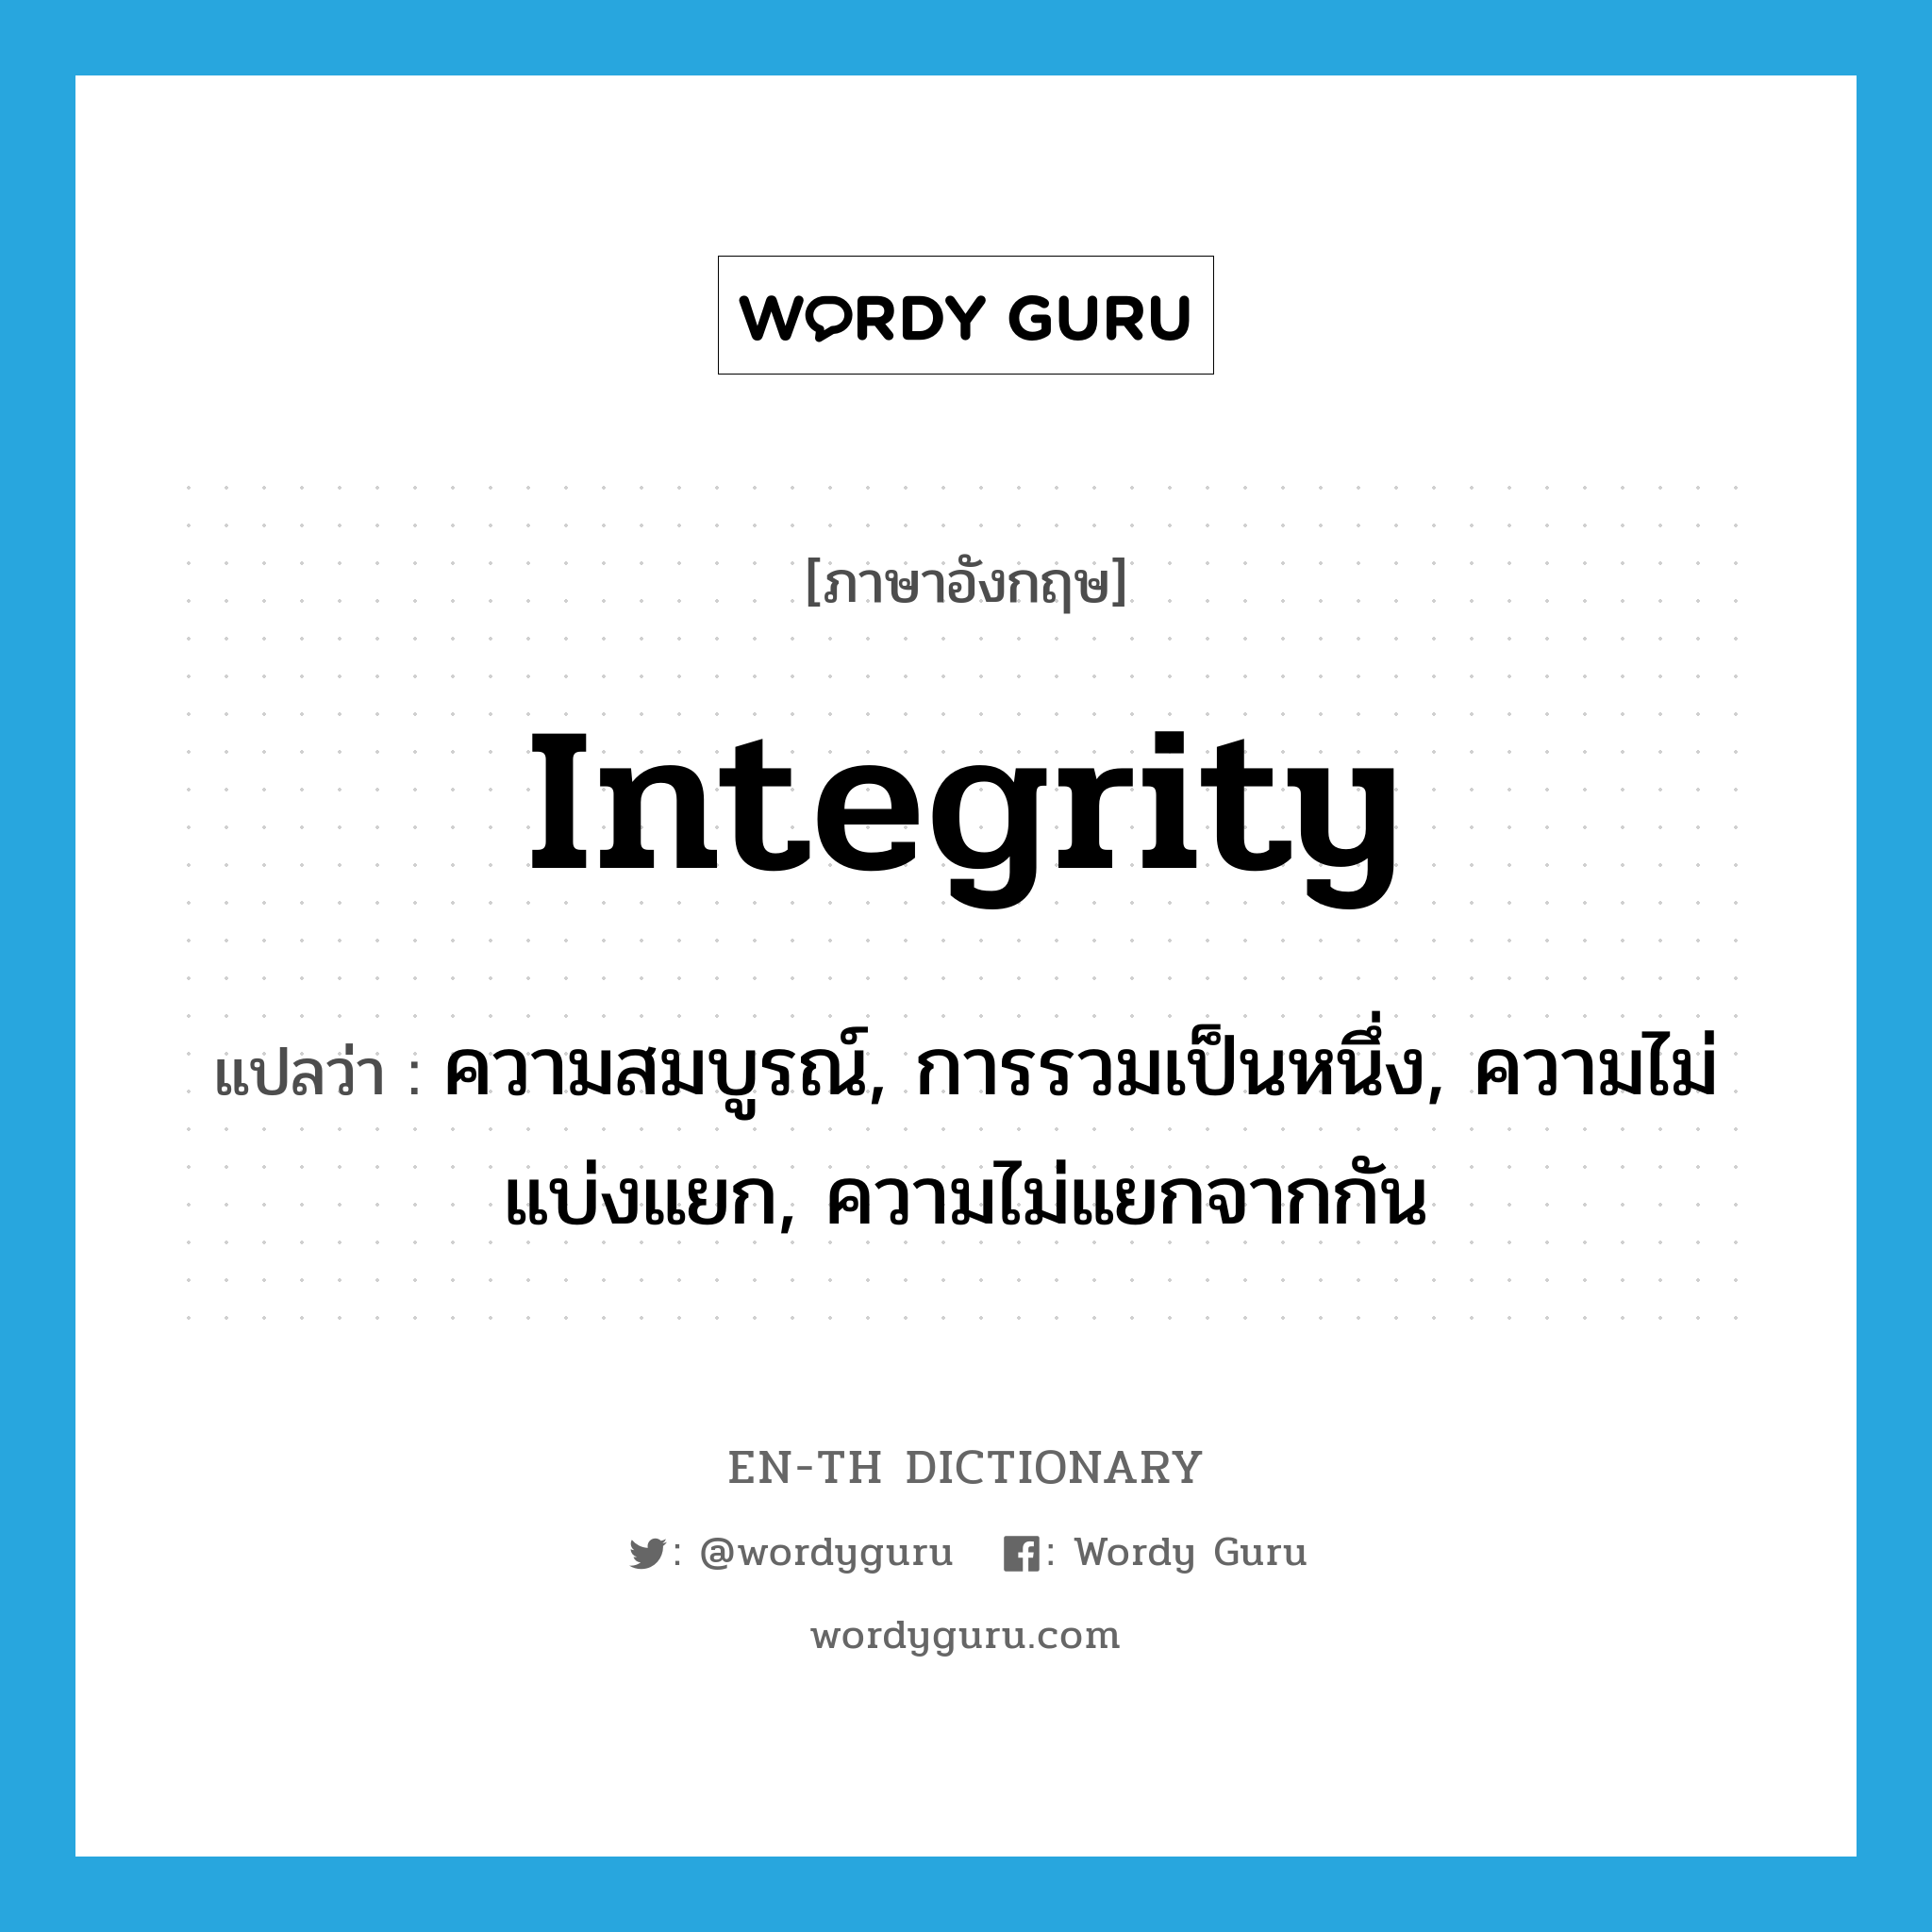 ความสมบูรณ์, การรวมเป็นหนึ่ง, ความไม่แบ่งแยก, ความไม่แยกจากกัน ภาษาอังกฤษ?, คำศัพท์ภาษาอังกฤษ ความสมบูรณ์, การรวมเป็นหนึ่ง, ความไม่แบ่งแยก, ความไม่แยกจากกัน แปลว่า integrity ประเภท N หมวด N